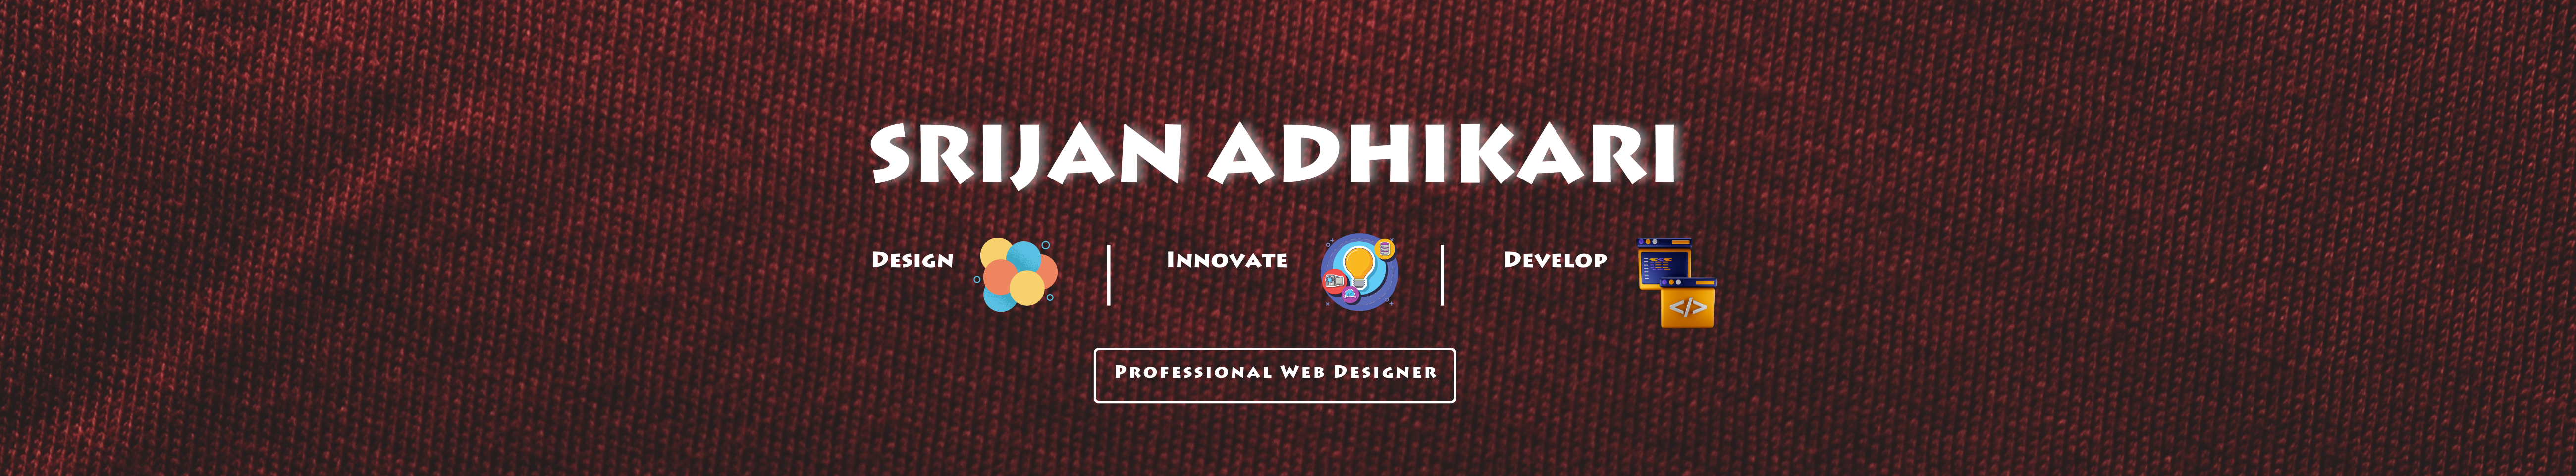 Srijan Adhikari's profile banner